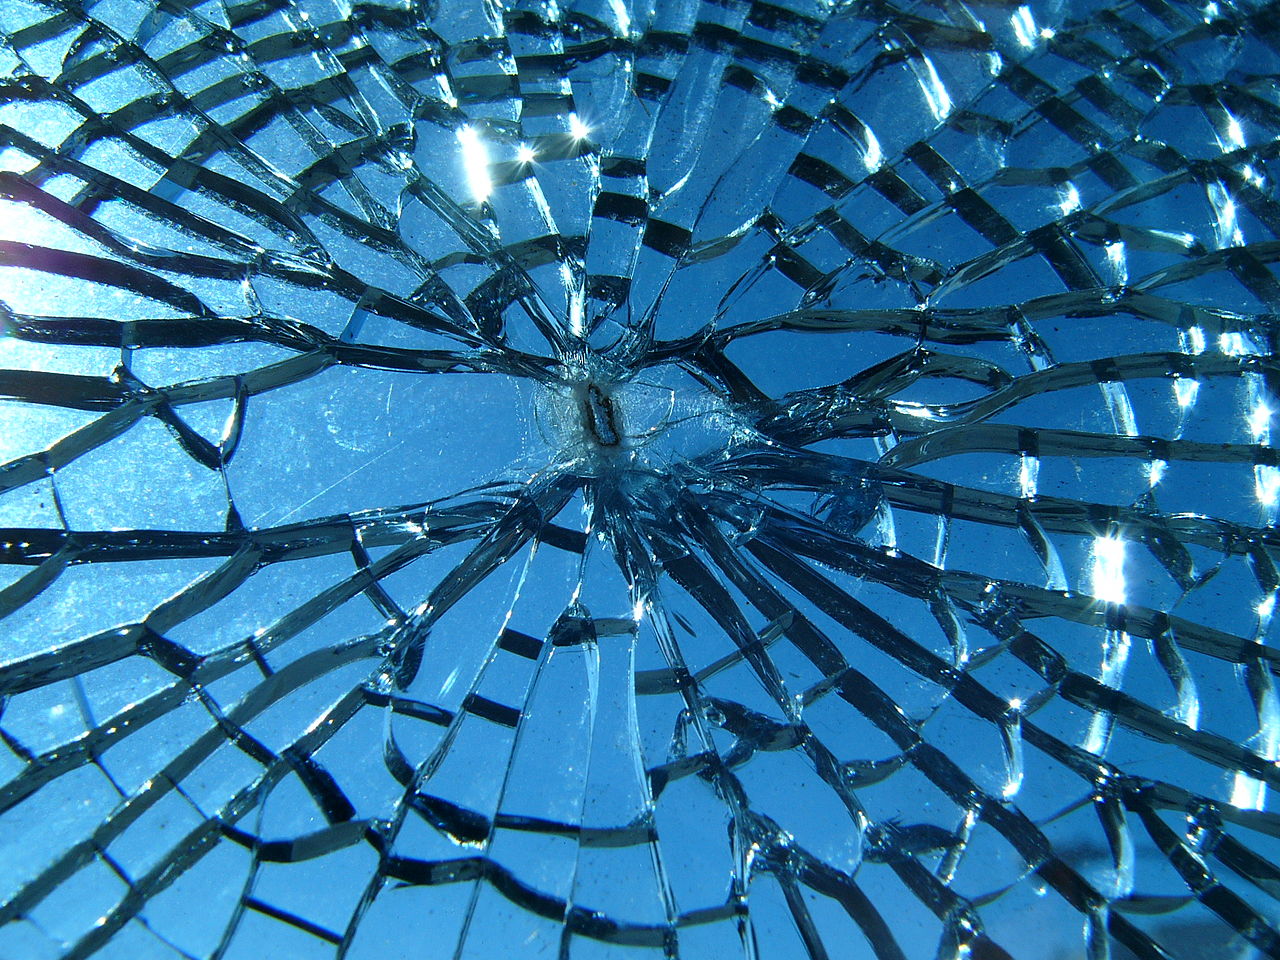 Le verre casse facilement. Un jour, ce ne sera peut-être plus le cas : des chercheurs ont réussi à rendre du verre plus résistant en y créant des microfissures. © Jef Poskanzer, Flickr, cc by sa 2.0